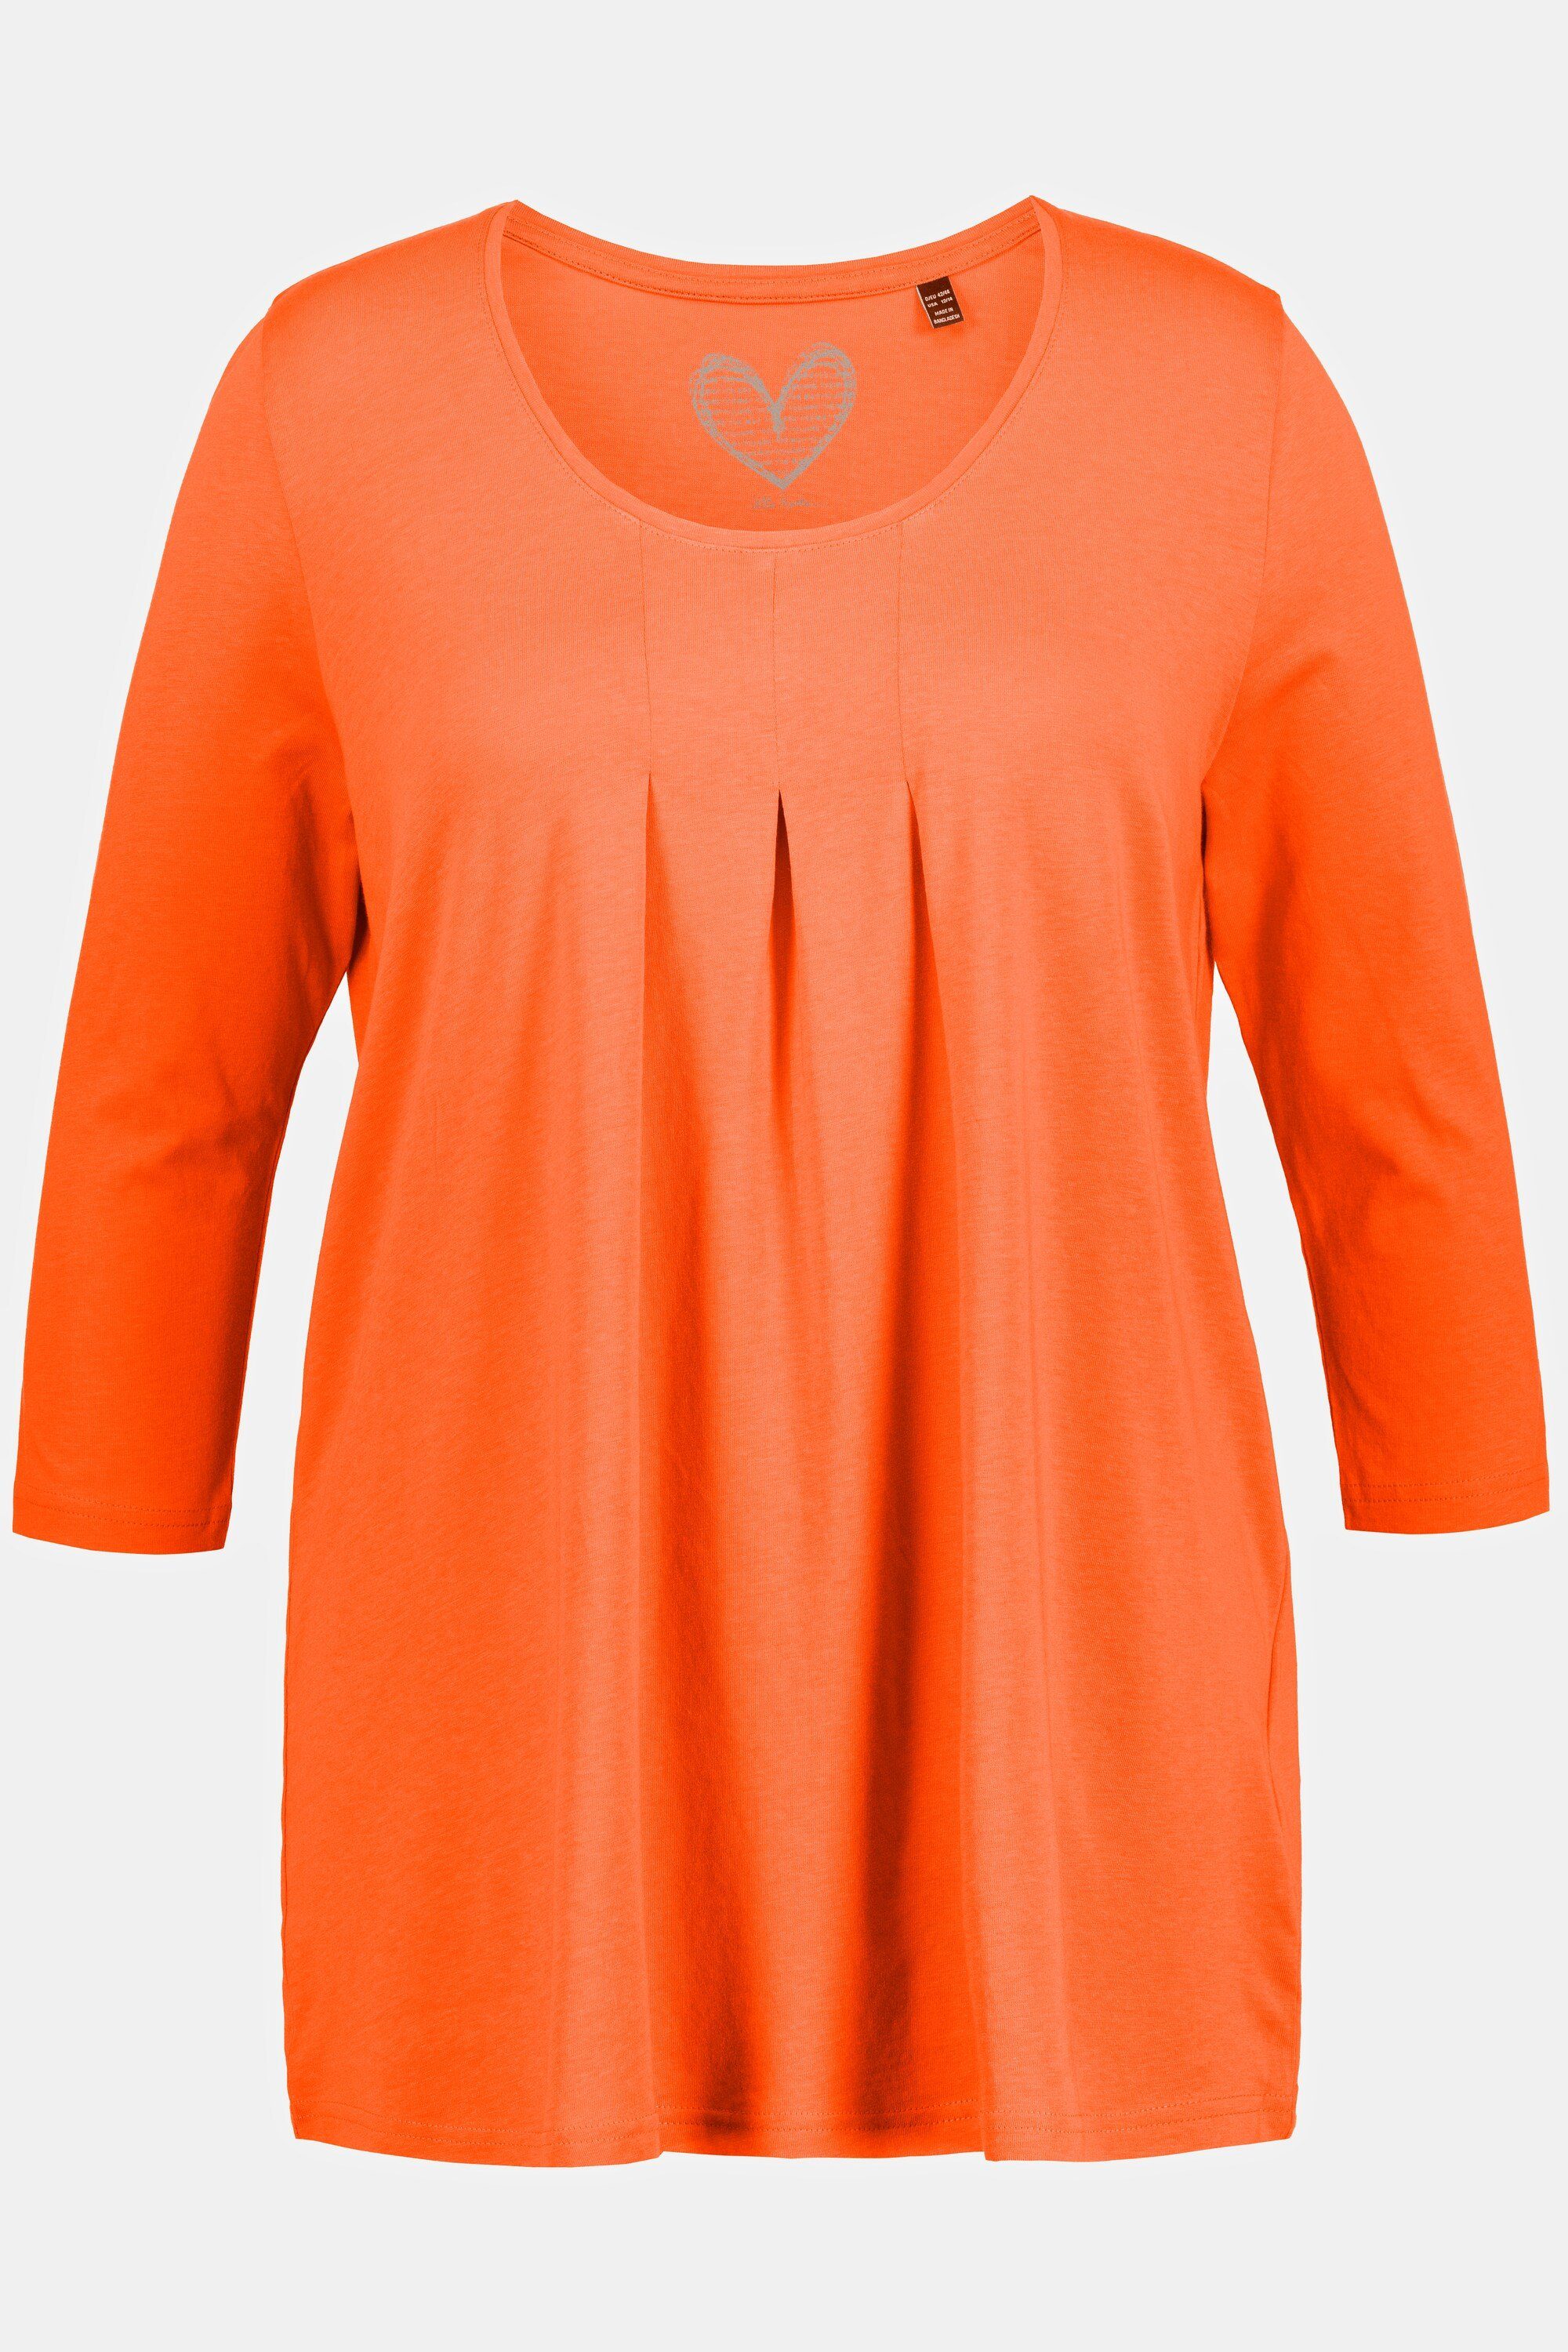 A-Linie Ulla Zierfalten 3/4-Arm Popken Shirt Rundhalsshirt orange Rundhals